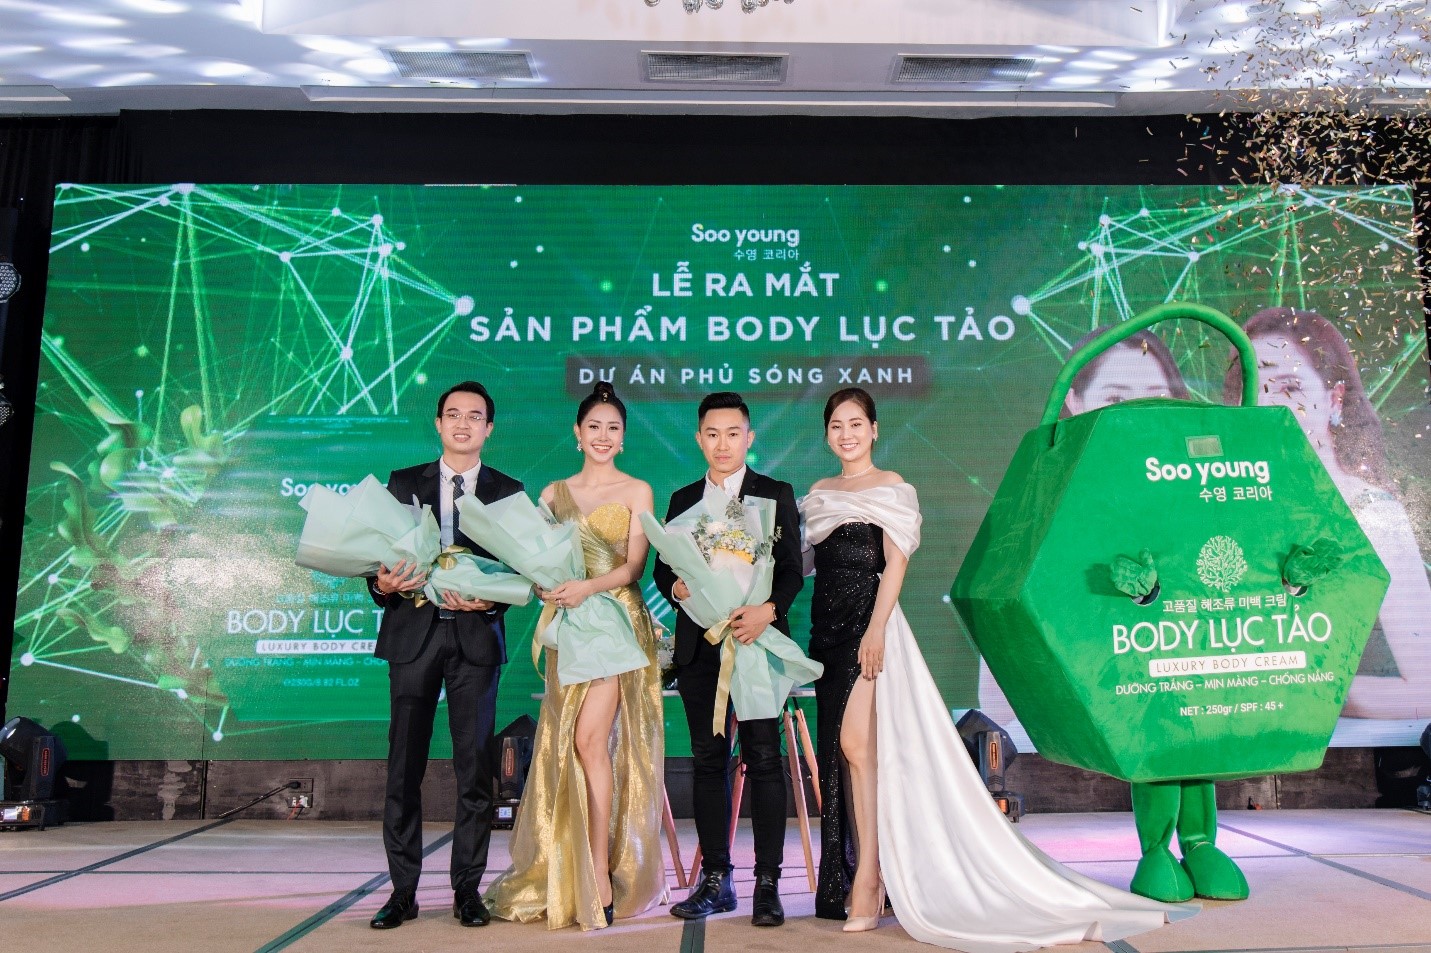 CEO Ngân Thị rạng rỡ tại sự kiện ra mắt Body Lục tảo - ảnh 4